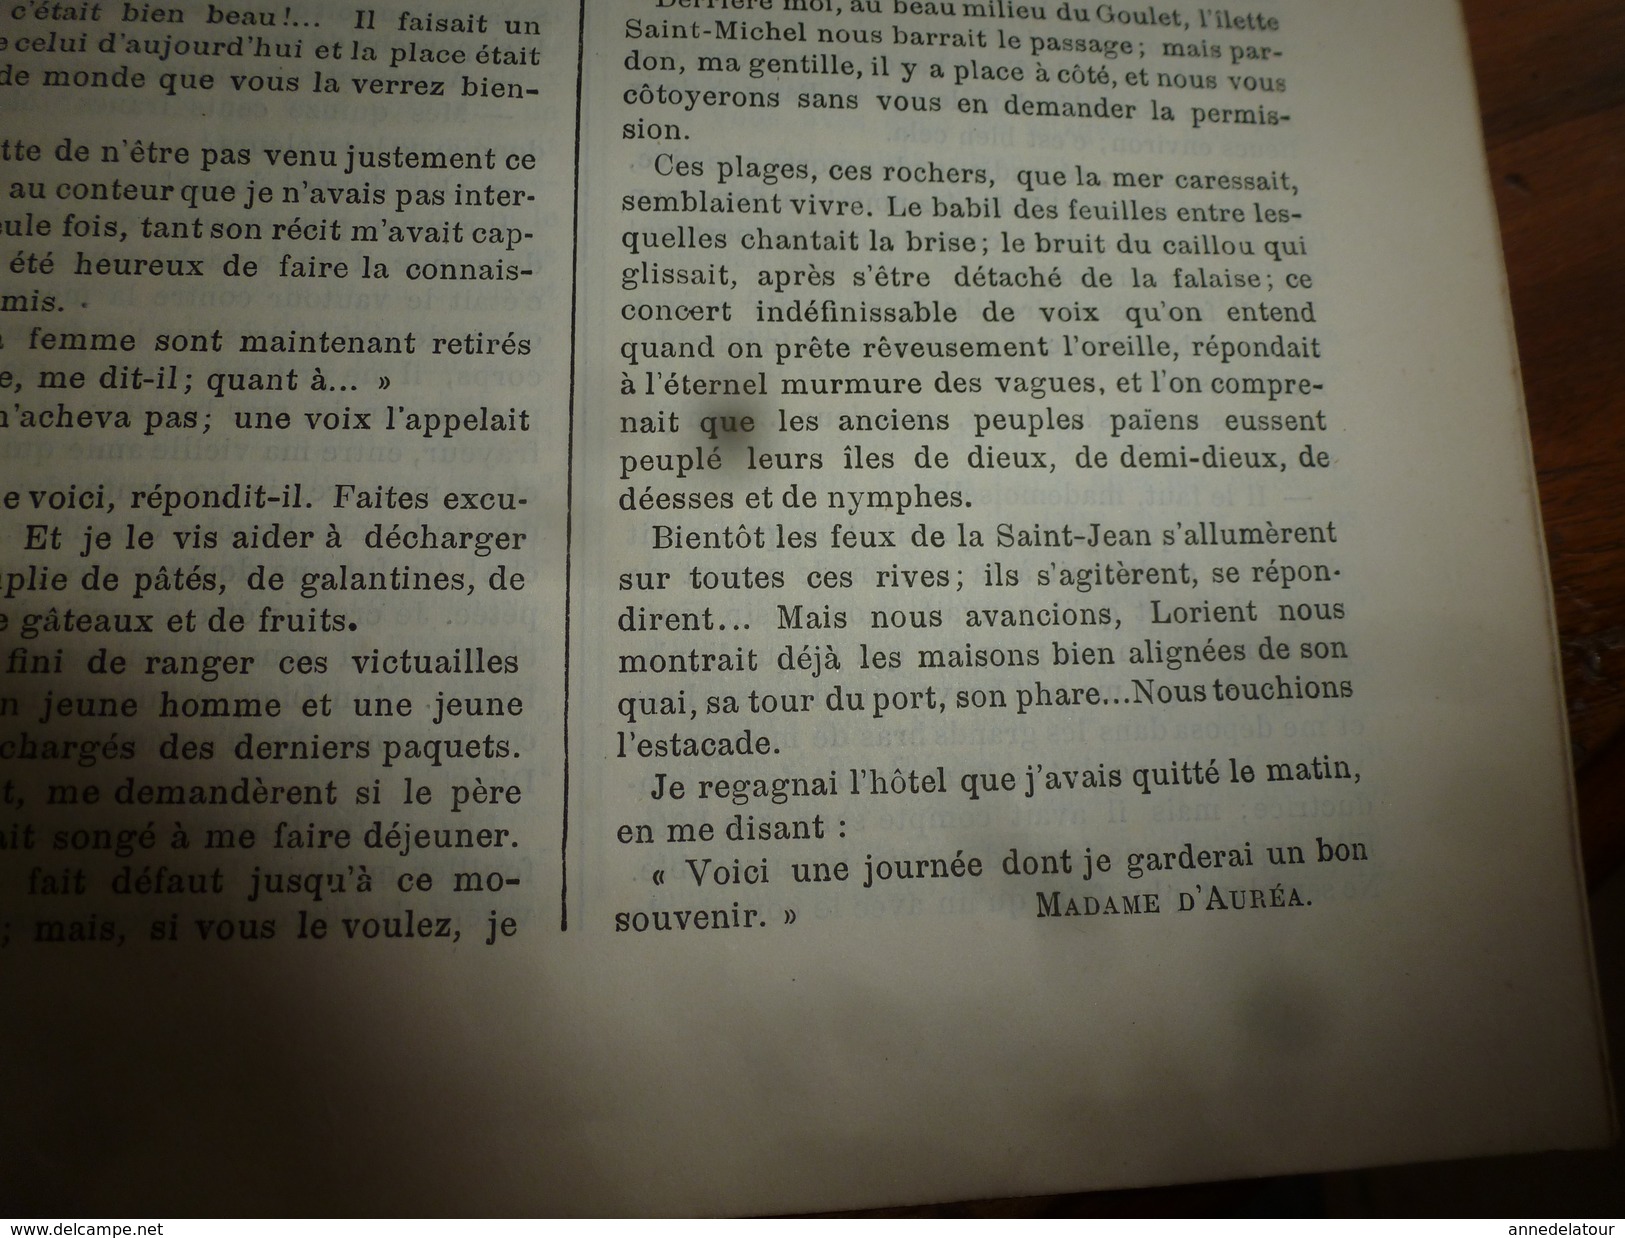 1883 Journal des Demoiselles --->Saïgon (Vietnam) et la Cochinchine française;  Gaston de Foix; etc